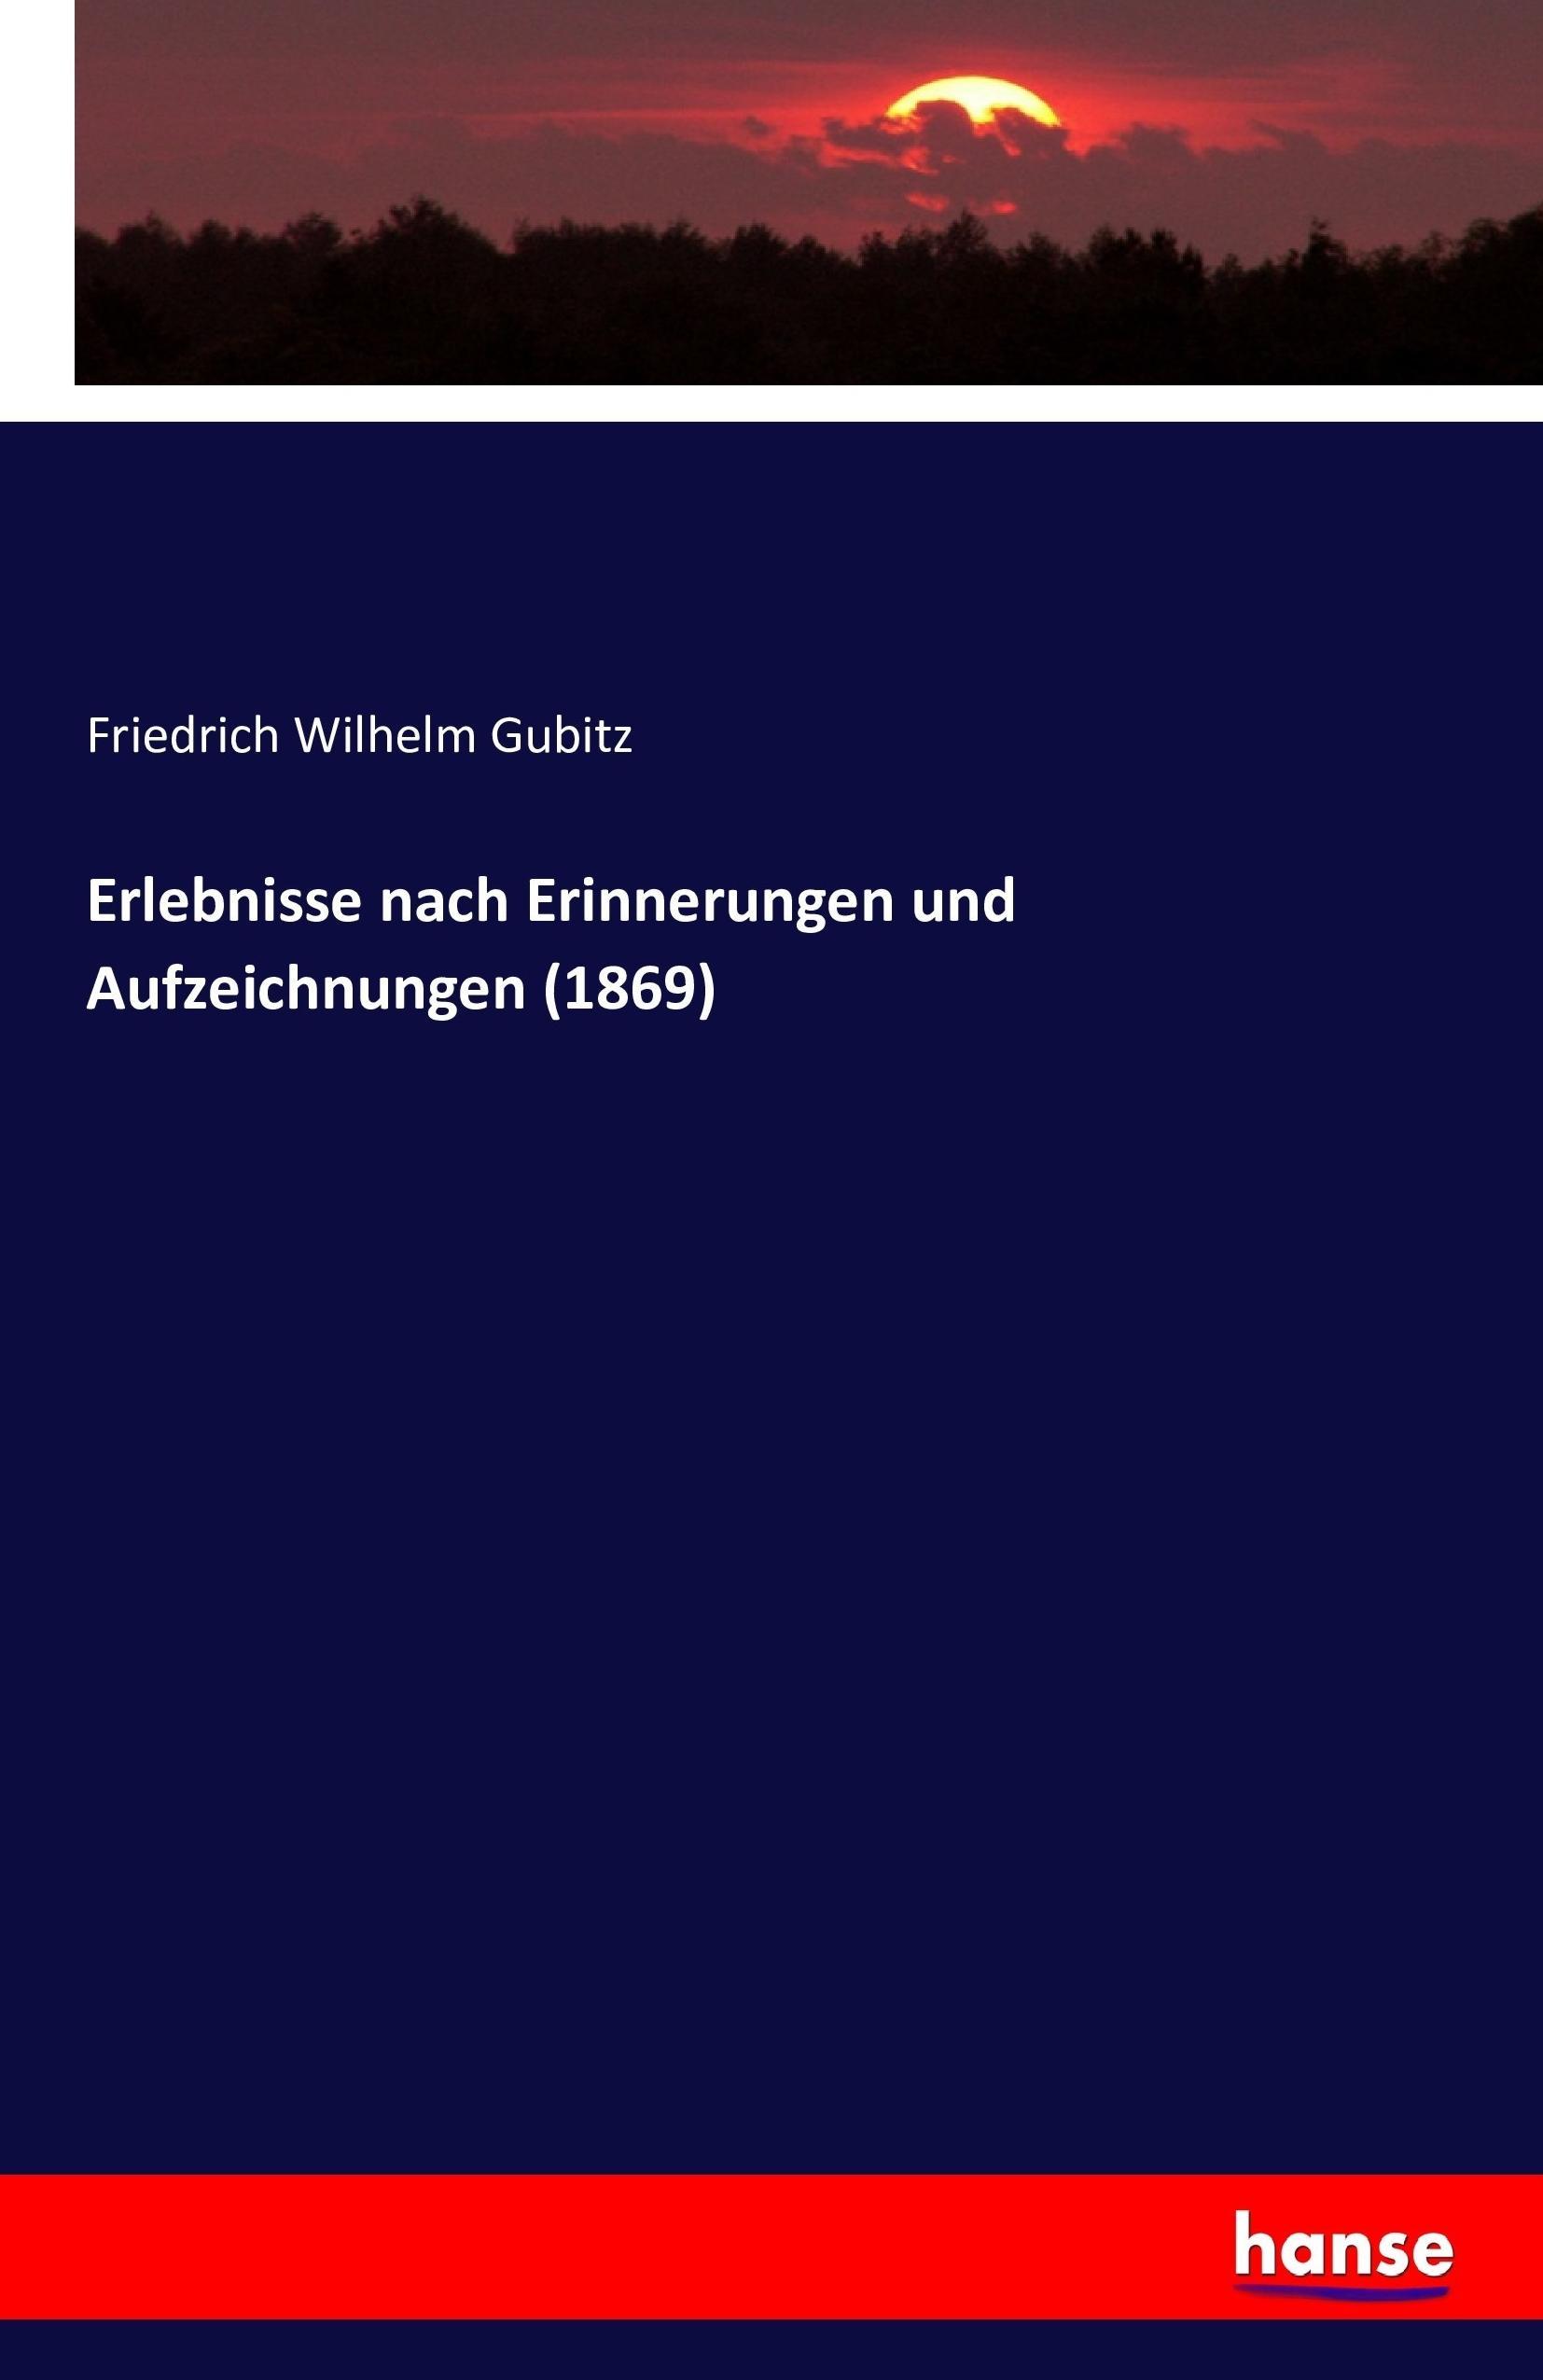 Erlebnisse nach Erinnerungen und Aufzeichnungen (1869) - Gubitz, Friedrich Wilhelm